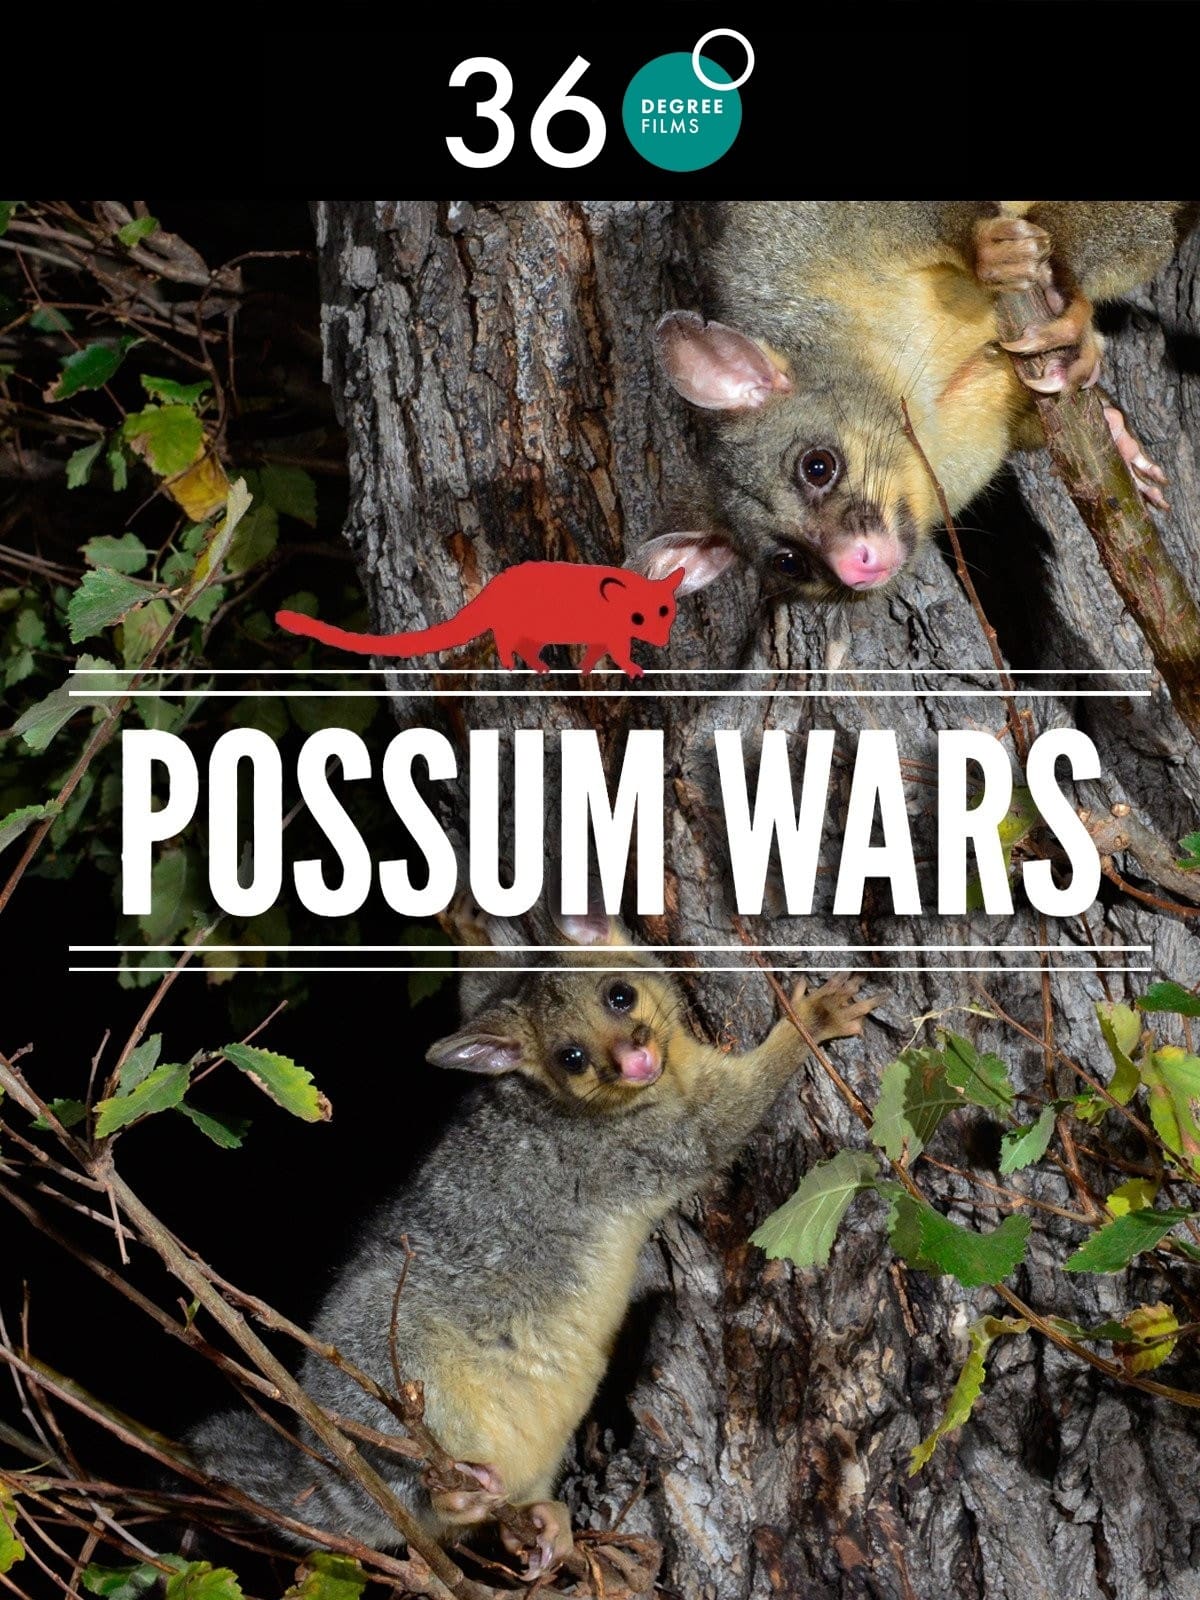 Possum Wars